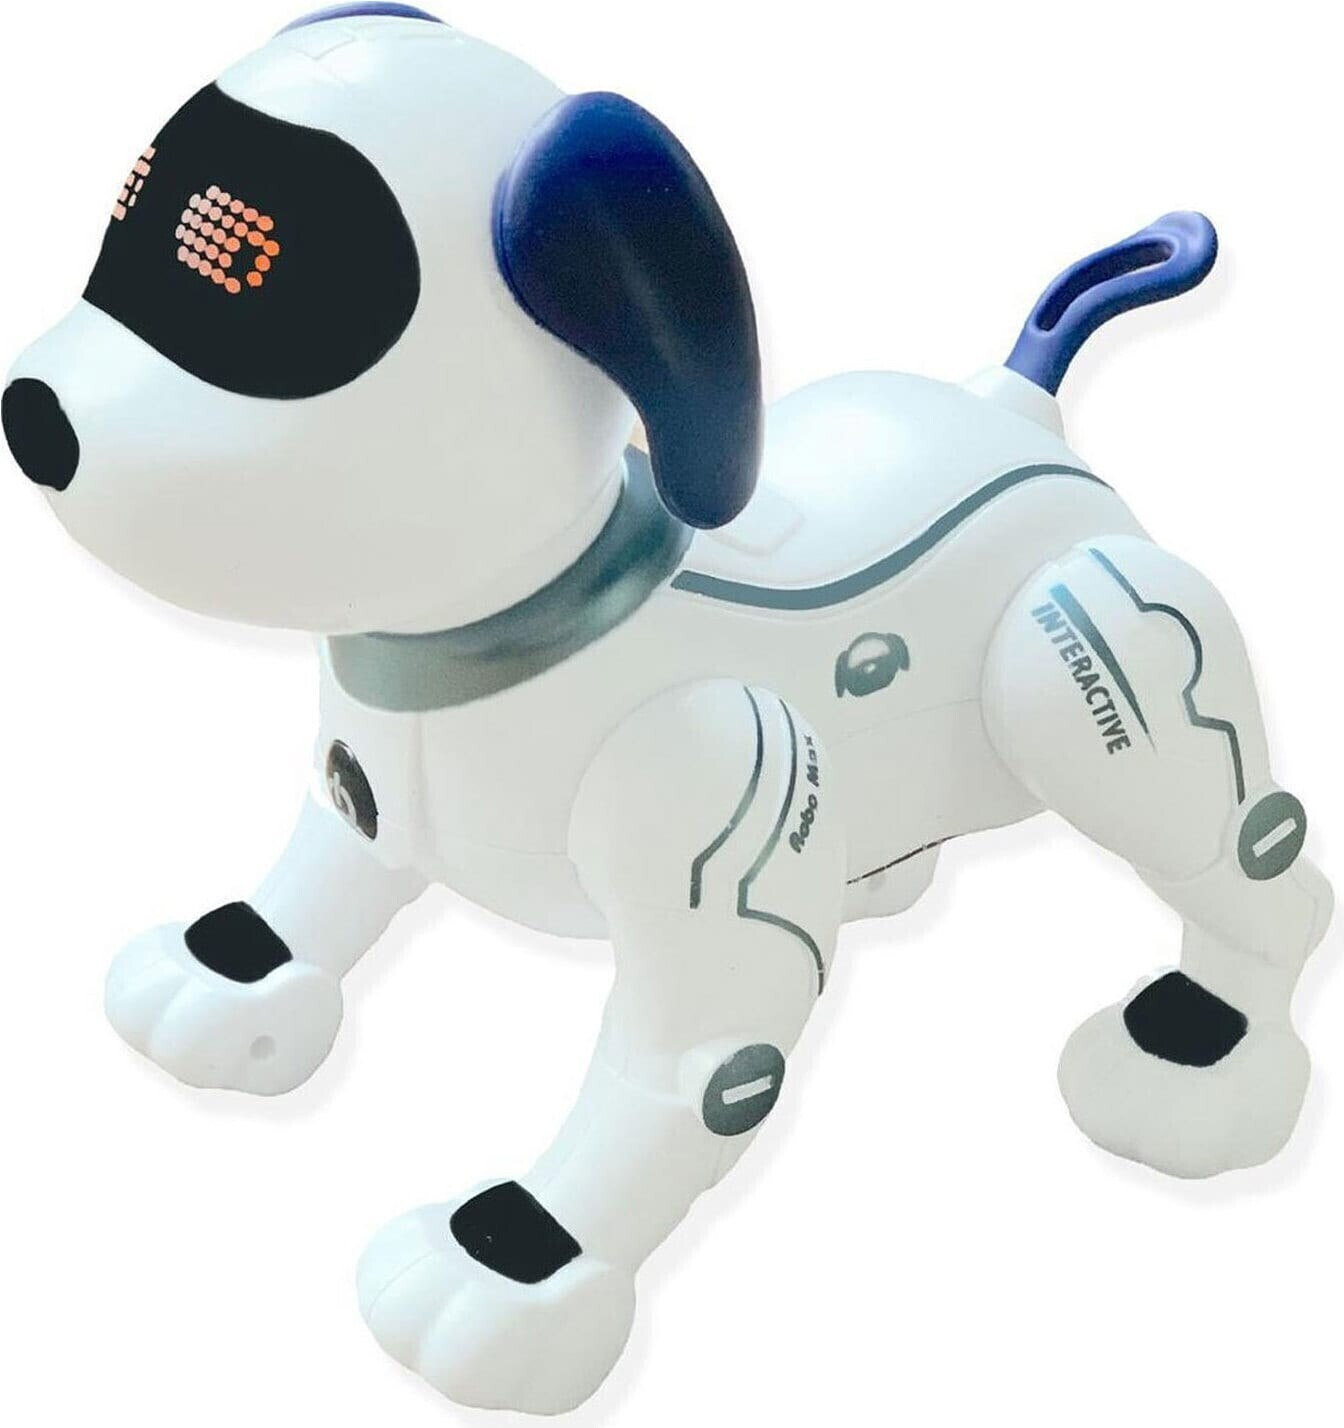 Lexibook Power Puppy Mon chien robot + RC Jouets Télécommande